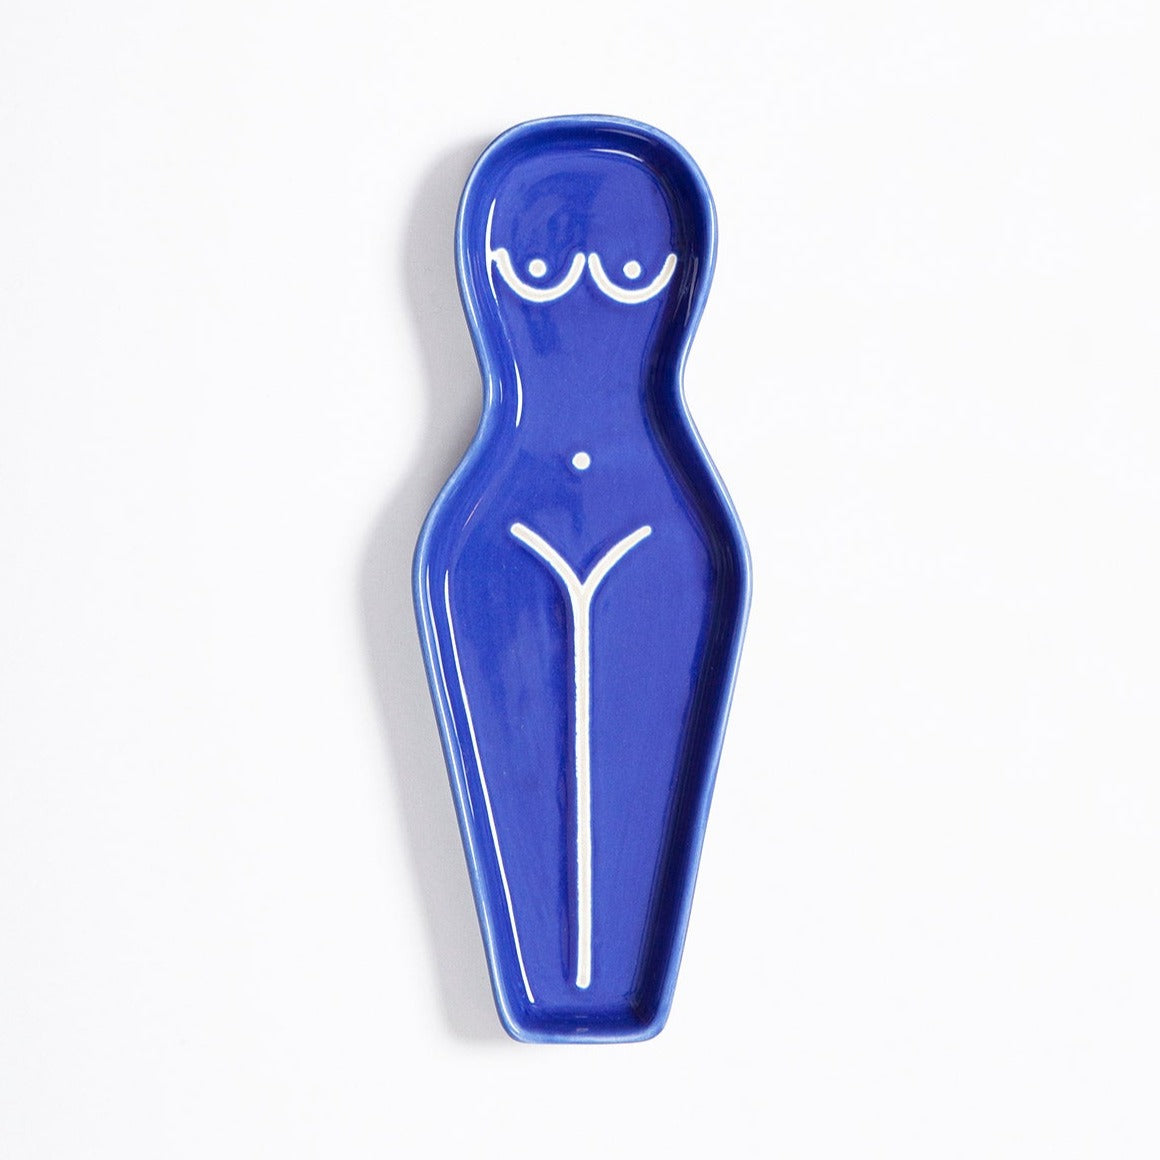 Mělká odkládací mistička Body Spoon Rest od značky DOIY Design v modré barvě.